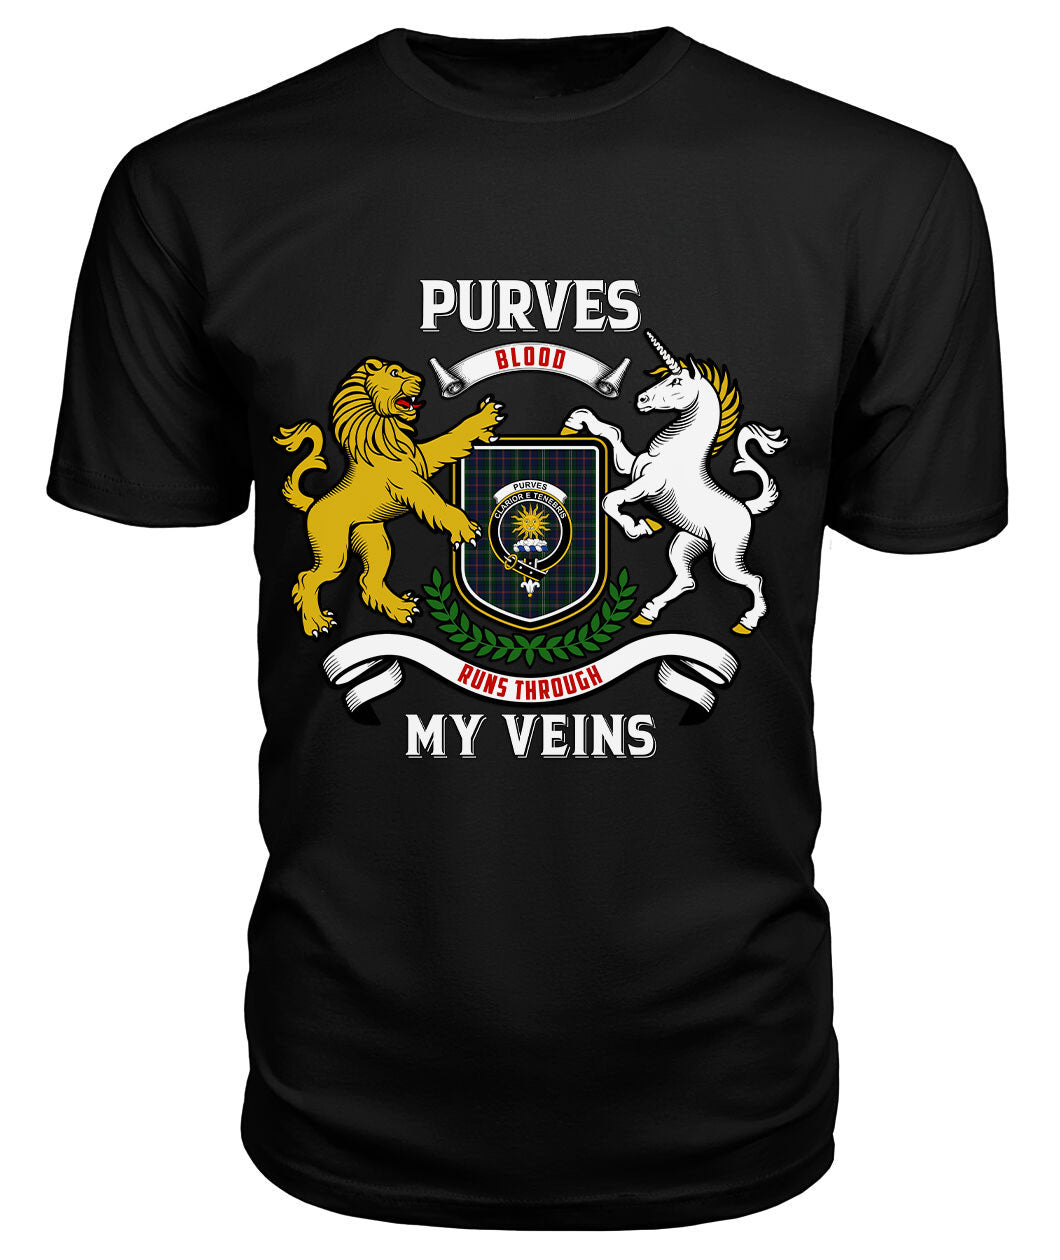 Purves Tartan Crest 2D T-shirt - Blood Runs Through My Veins Style